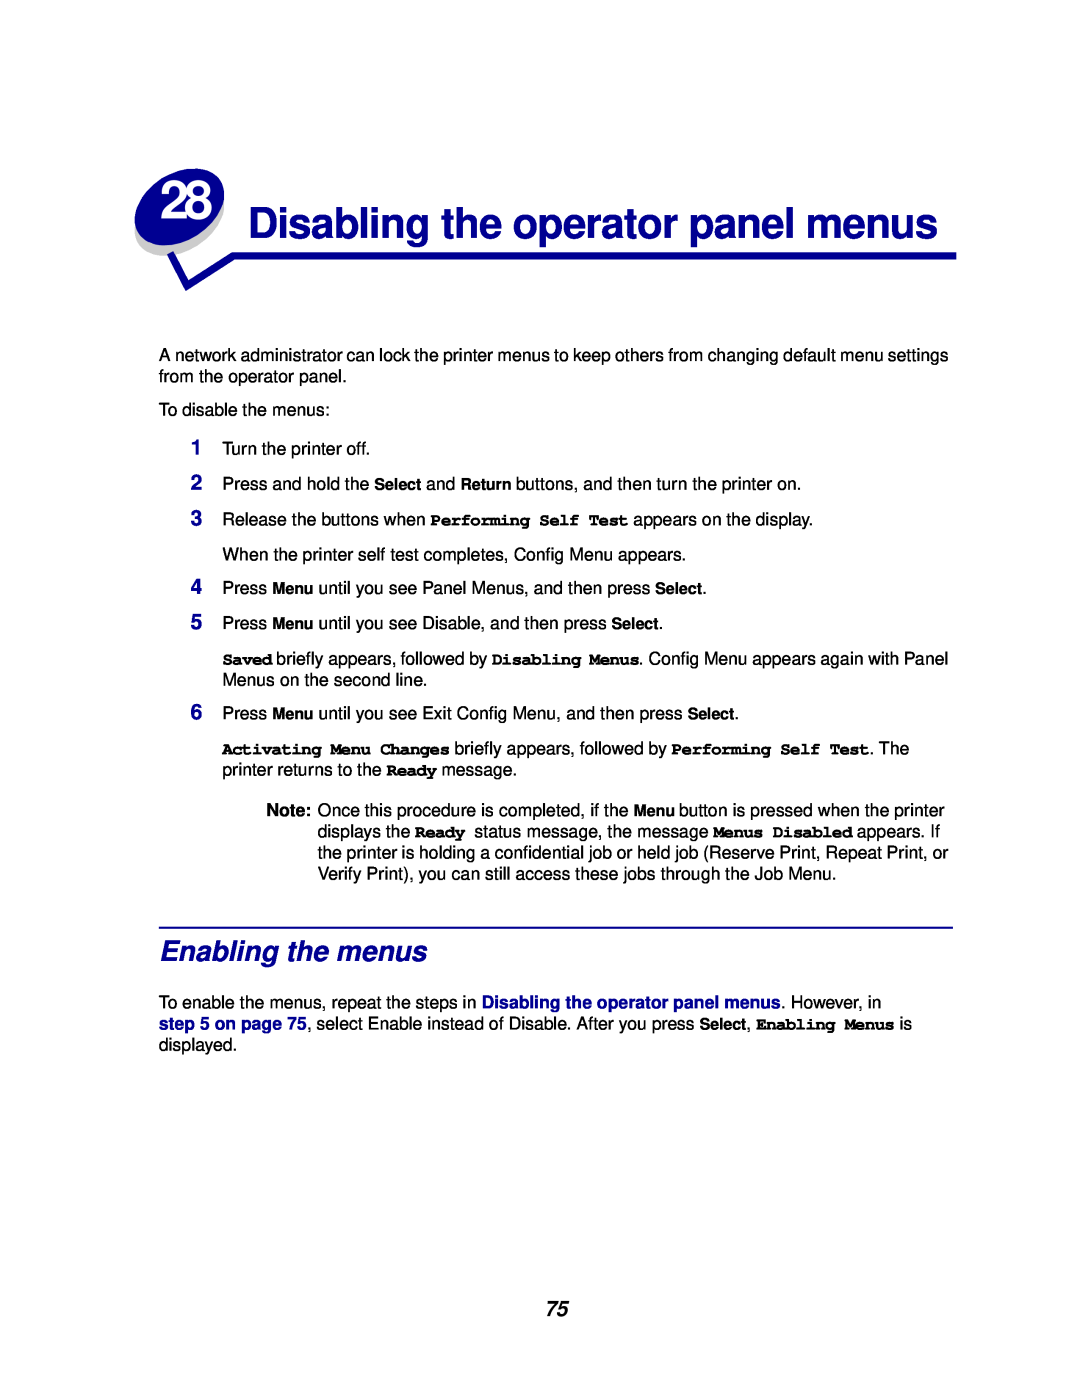 Lexmark 812 manual Disabling the operator panel menus, Enabling the menus 